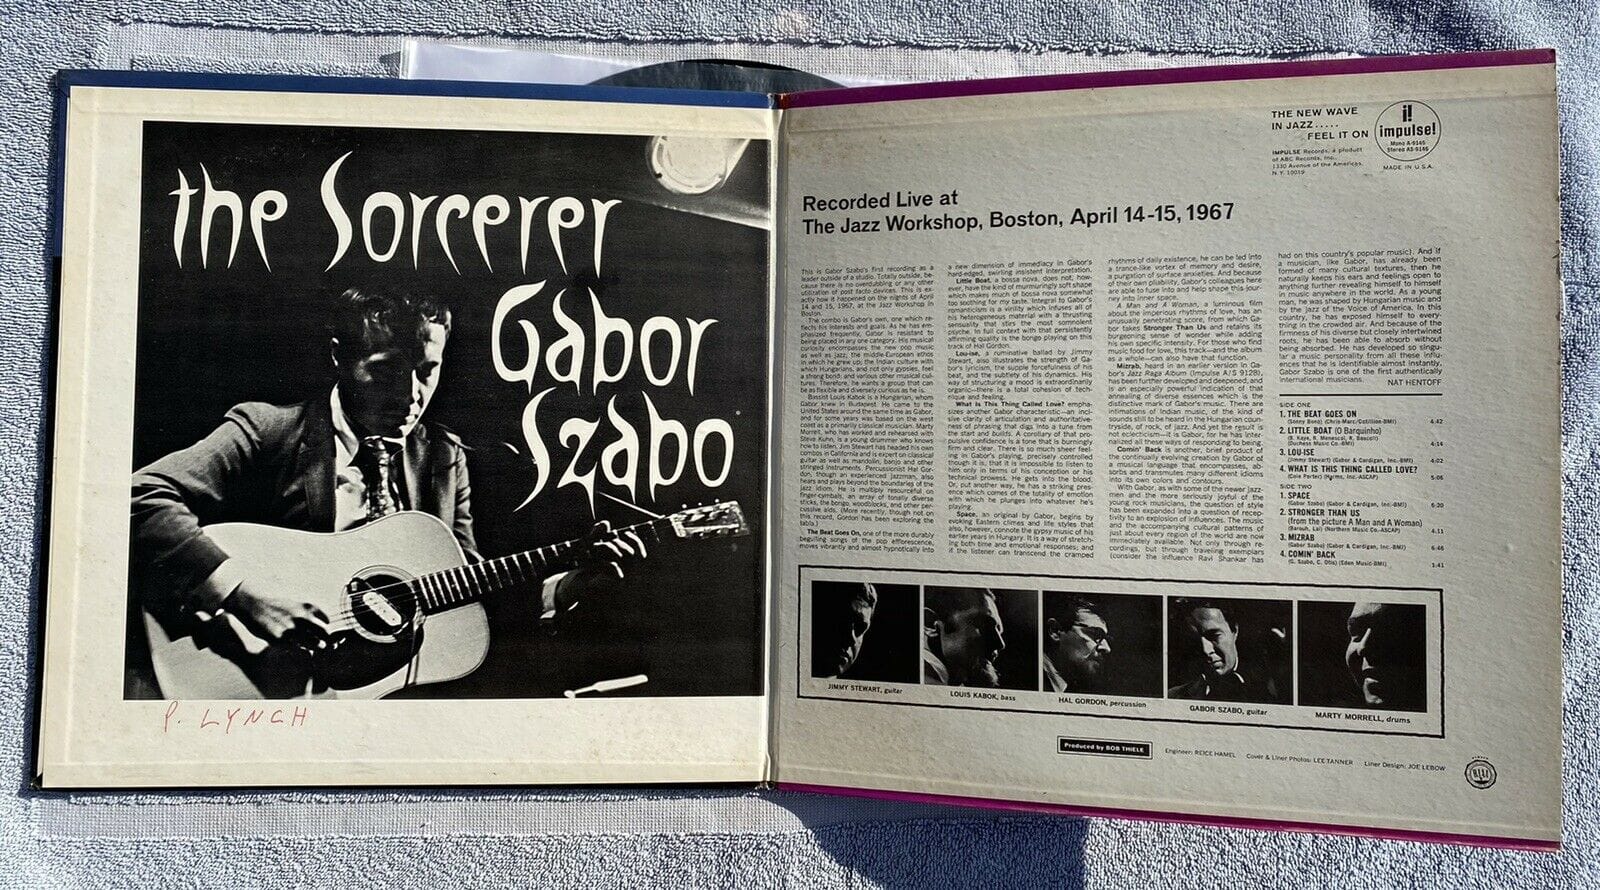 Gabor Szabo OG 1967 Stereo The Sorcerer RARE JAZZ IMPULSE LP Vinyl Record 3